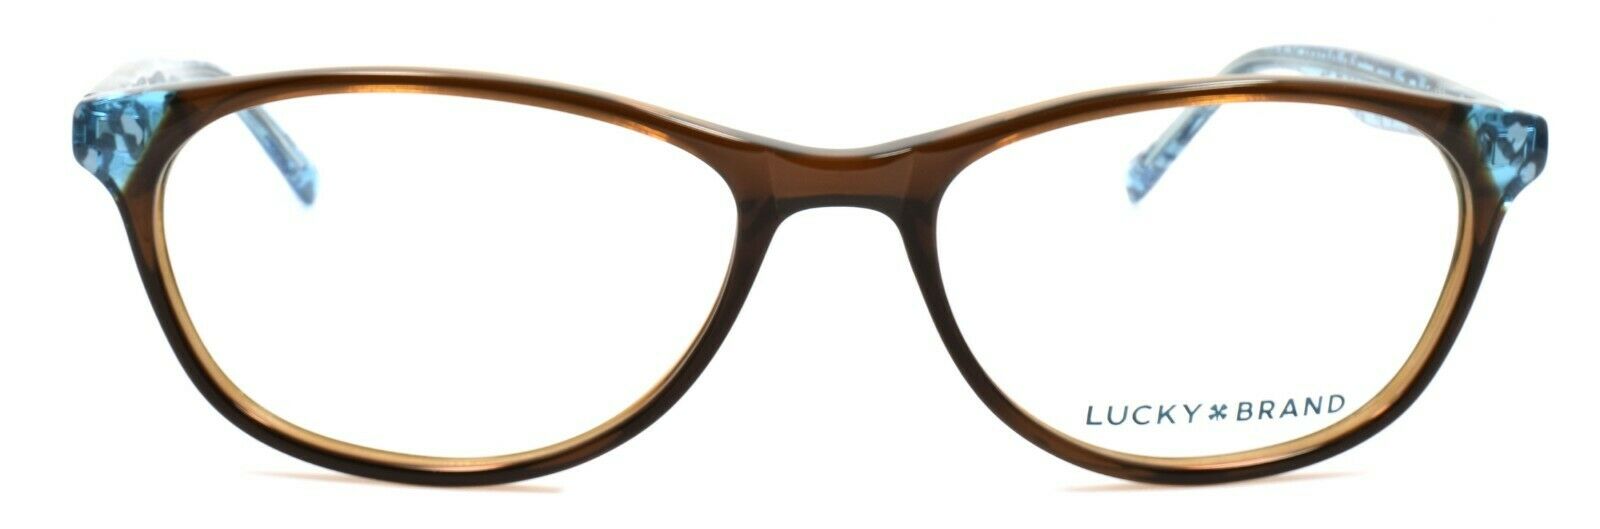 2-LUCKY BRAND D700 Women's Eyeglasses Frames 50-16-135 Brown + CASE-751286281965-IKSpecs